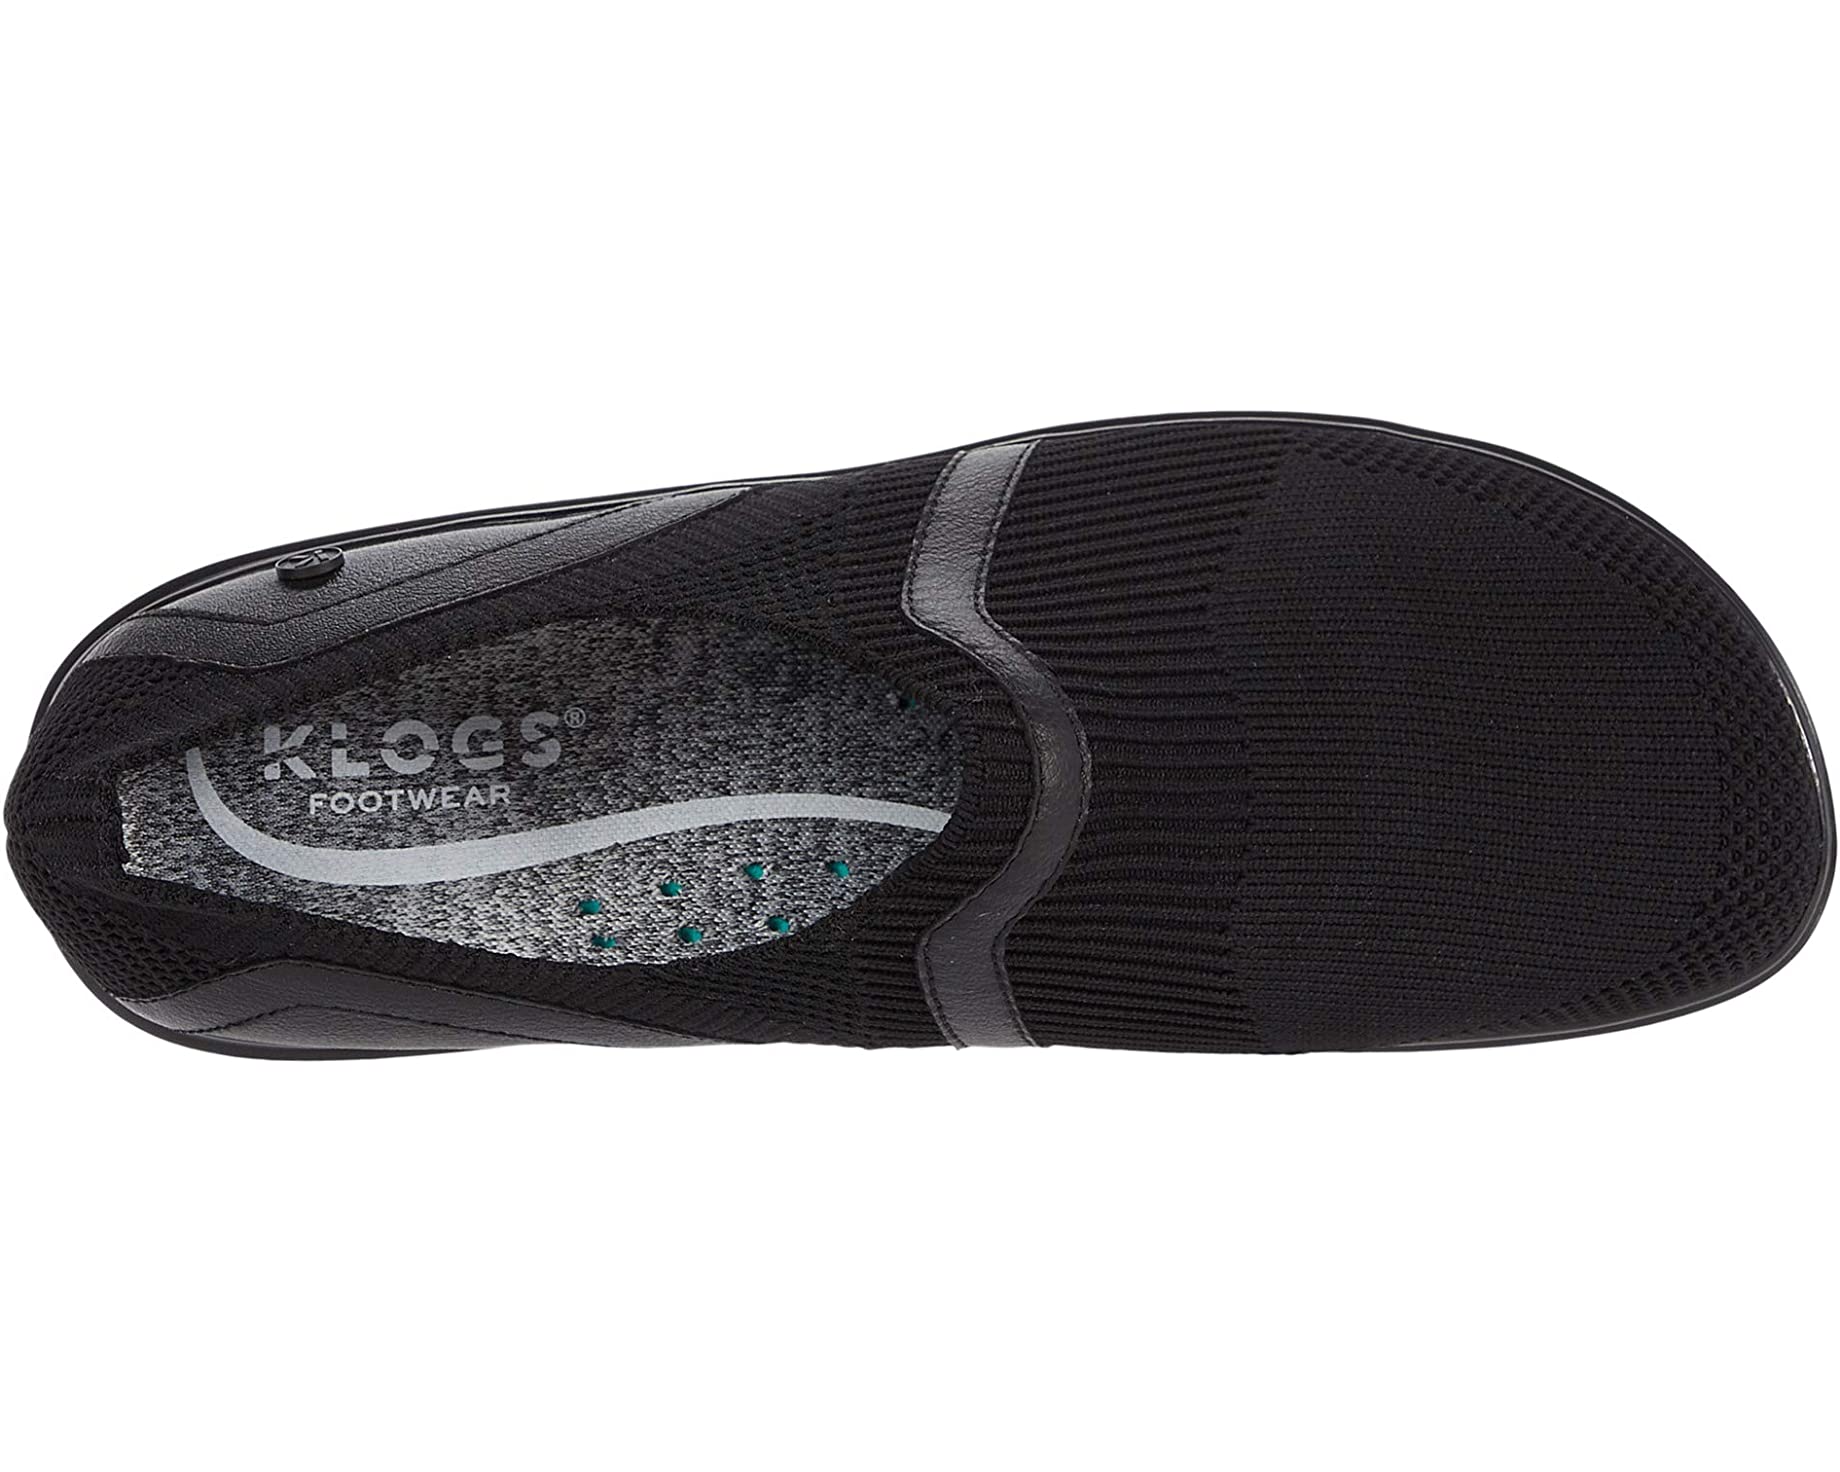 цена Кроссовки Evolve Klogs Footwear, черный